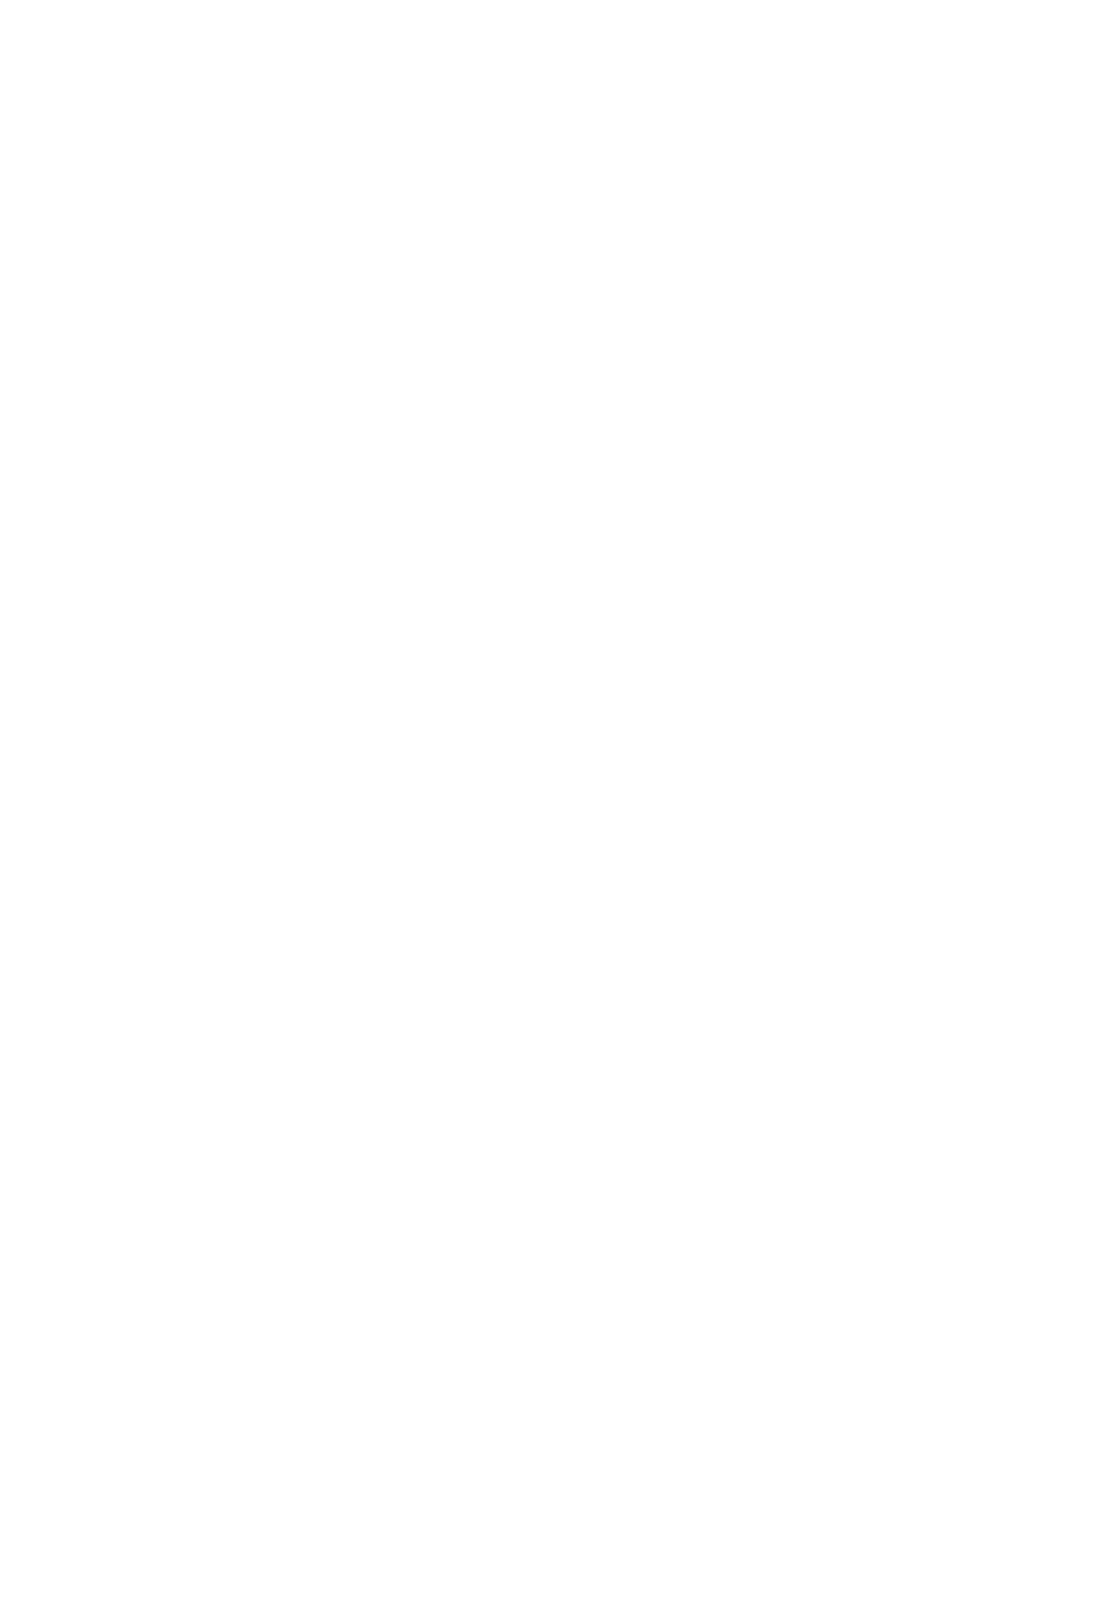 Grupo Português Génito-Urinário